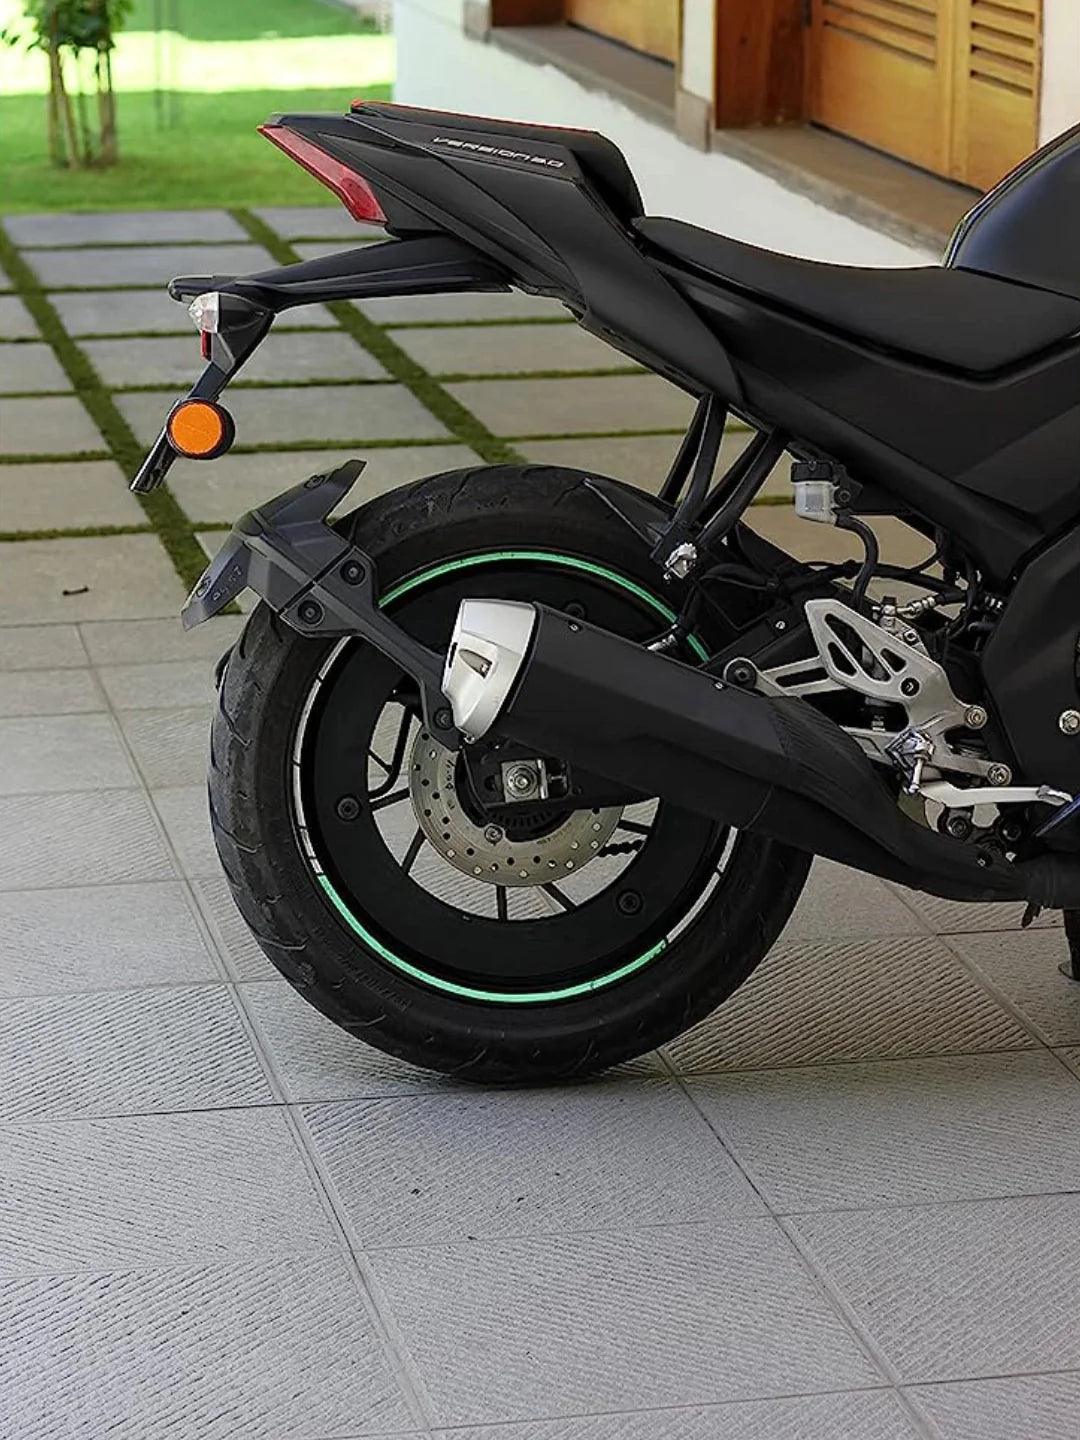 Projekt Pro Disc Wheel Cover 17inch Rear - Moto Modz